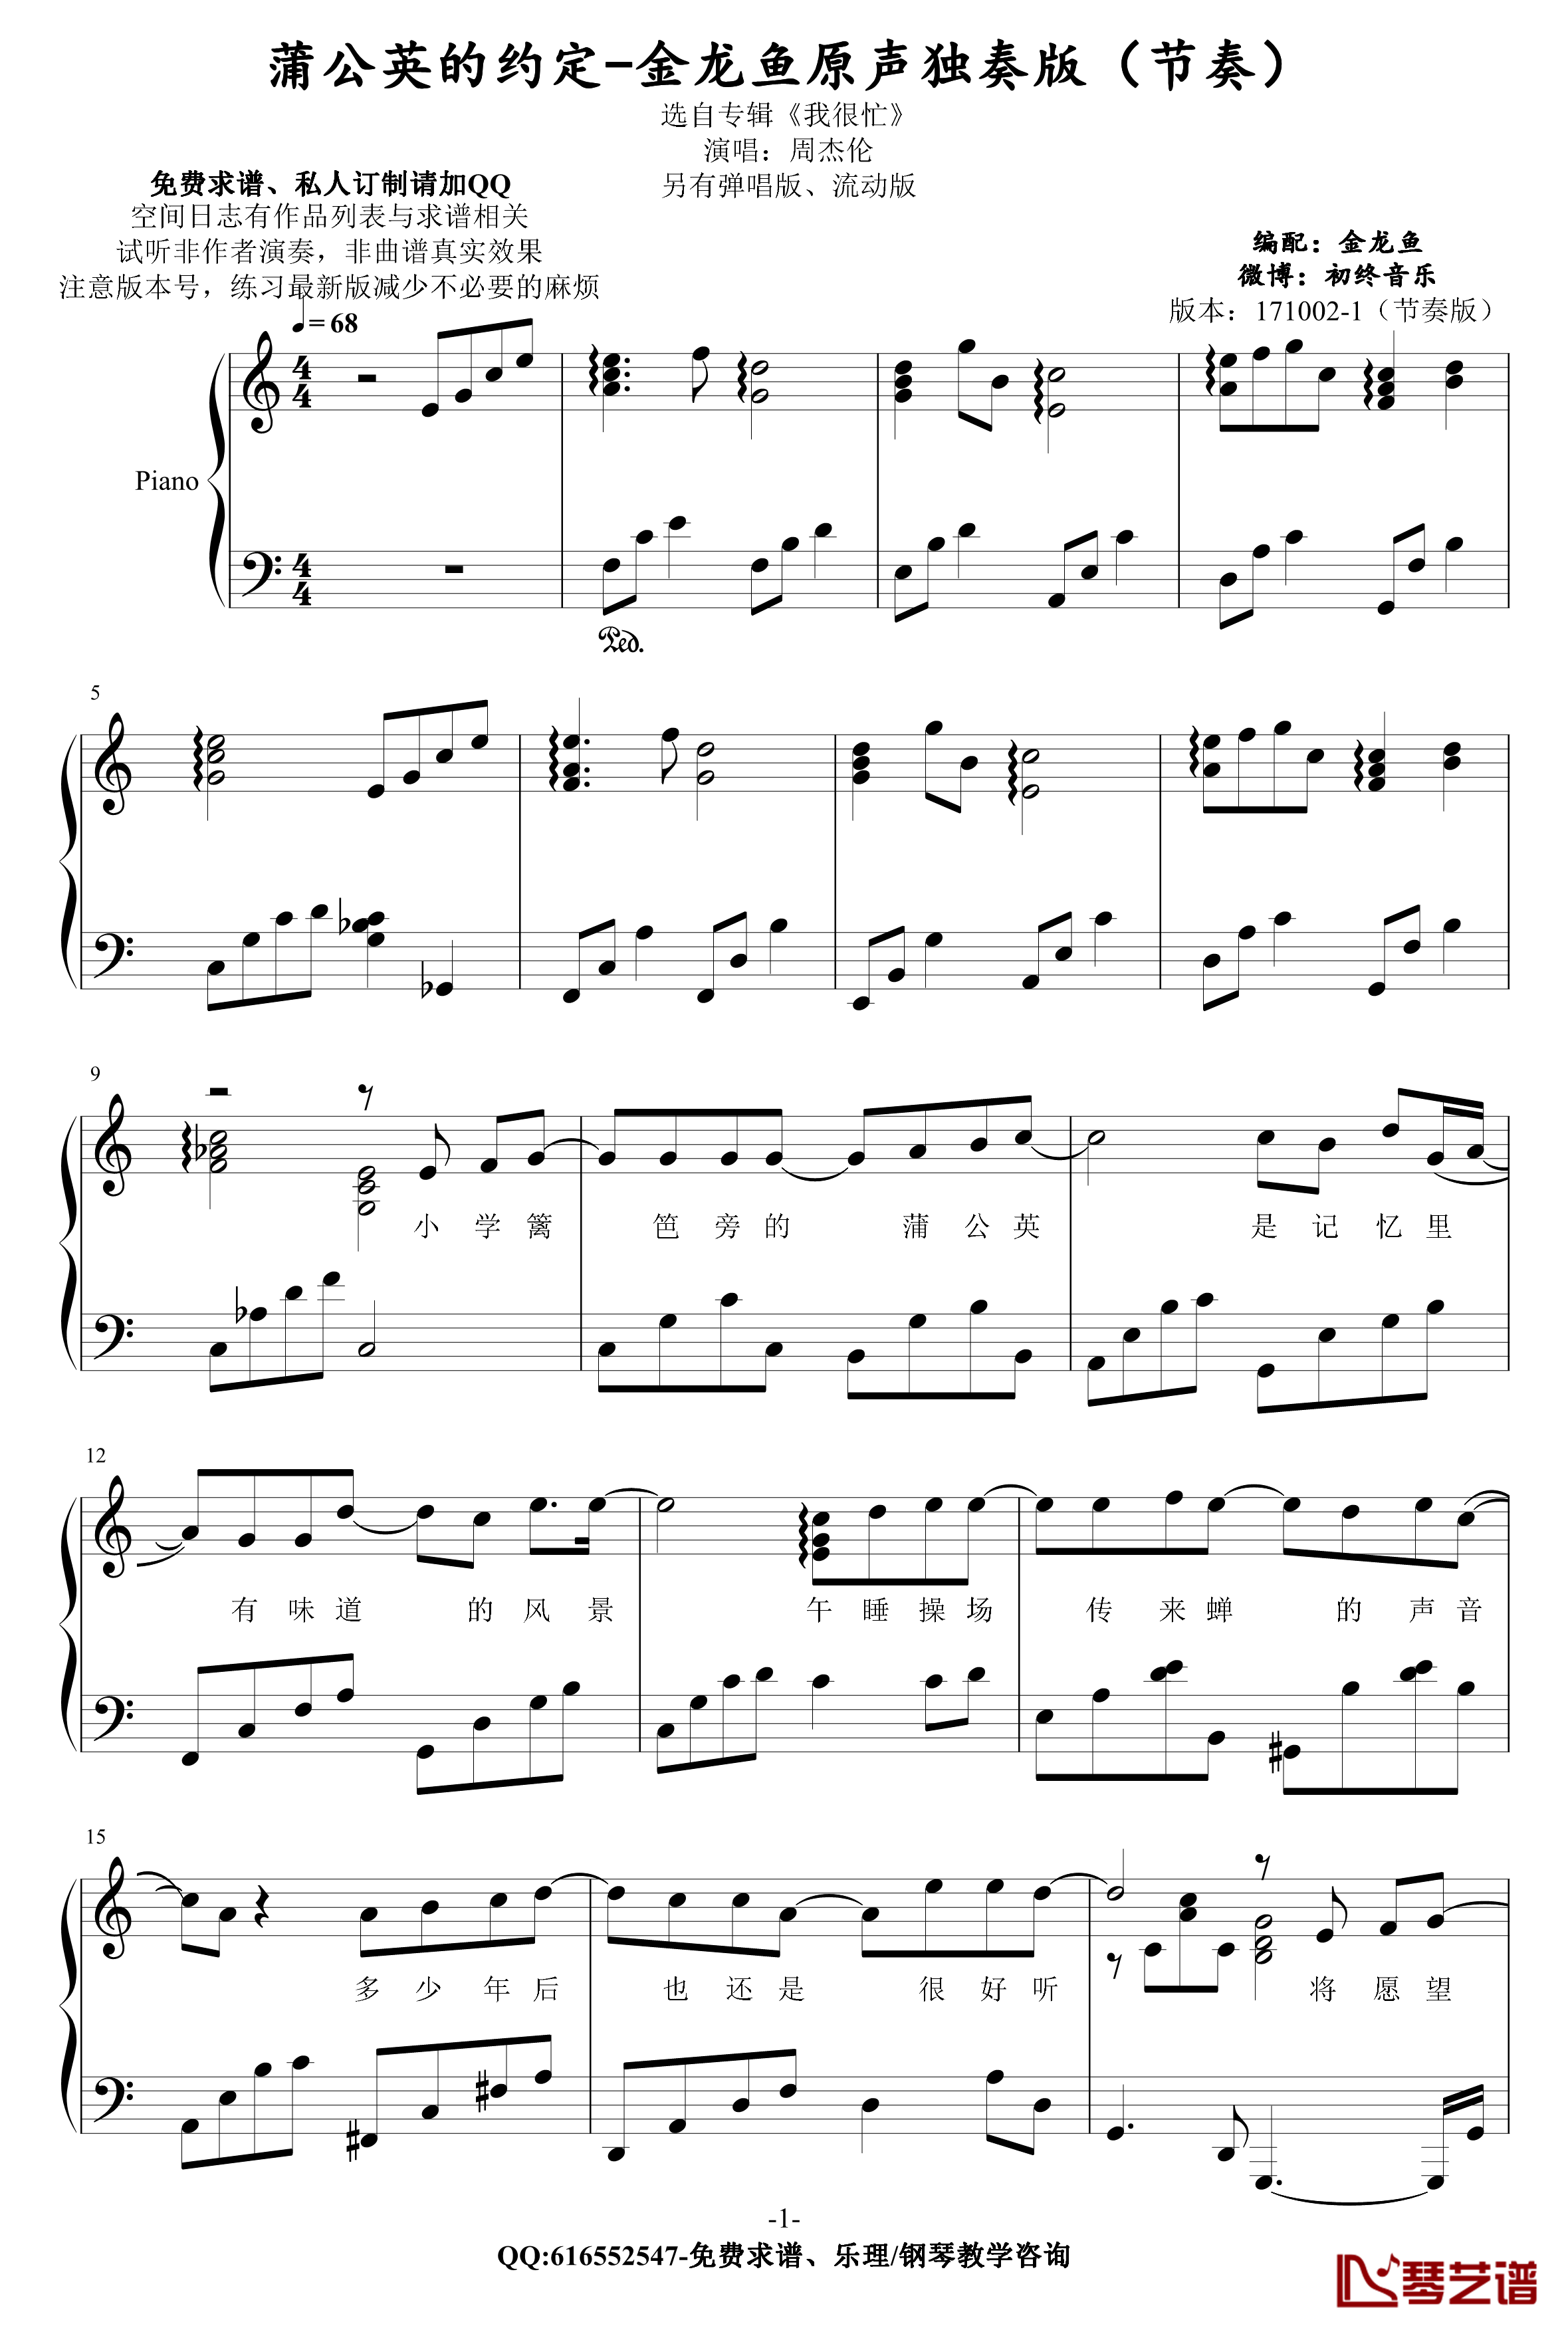 蒲公英的约定钢琴谱--金龙鱼原声独奏版节奏-周杰伦1